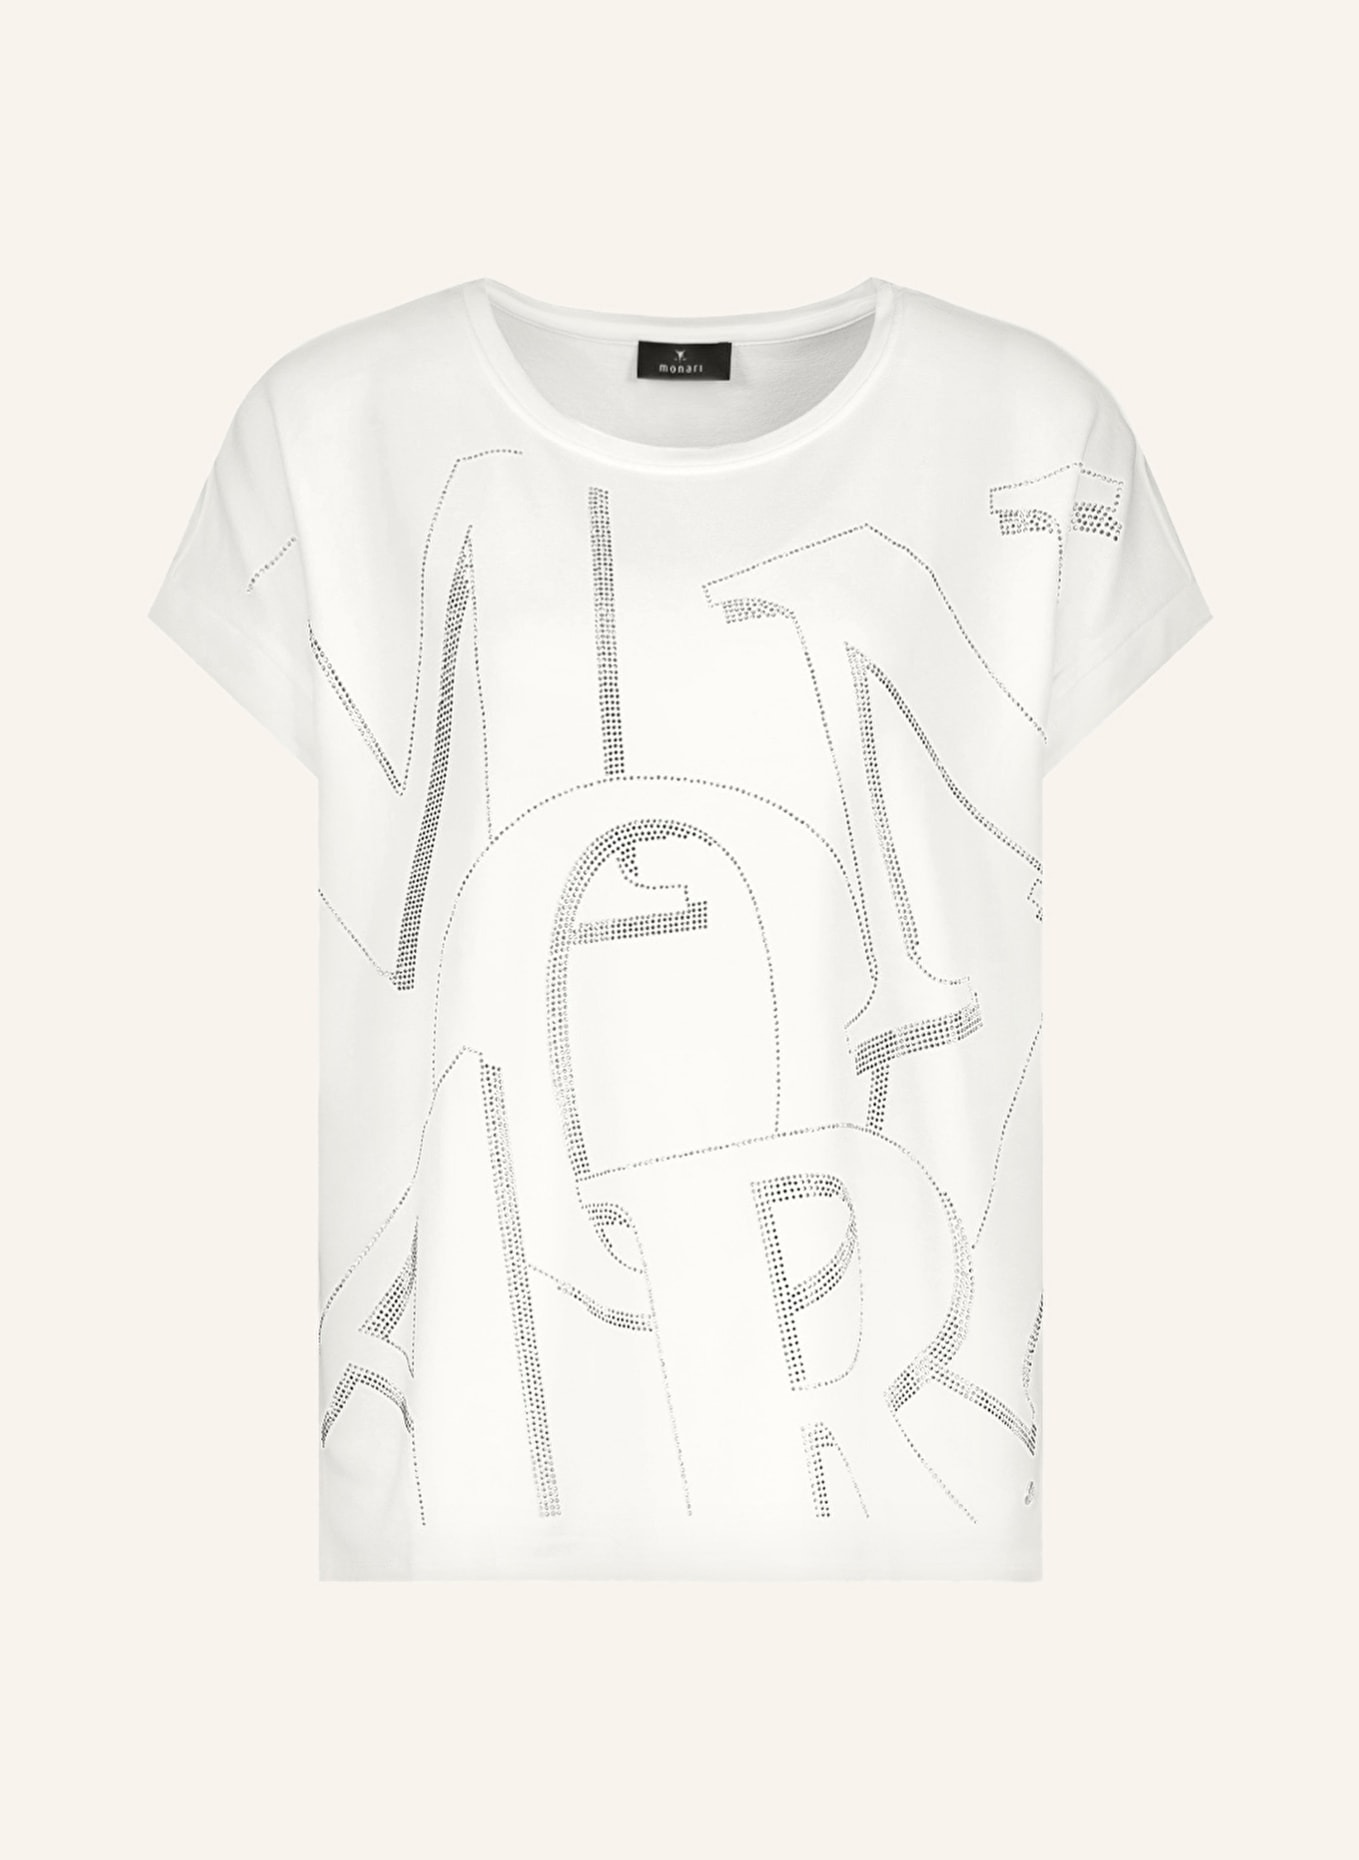 monari T-Shirt mit Schmucksteinen, Farbe: WEISS (Bild 1)